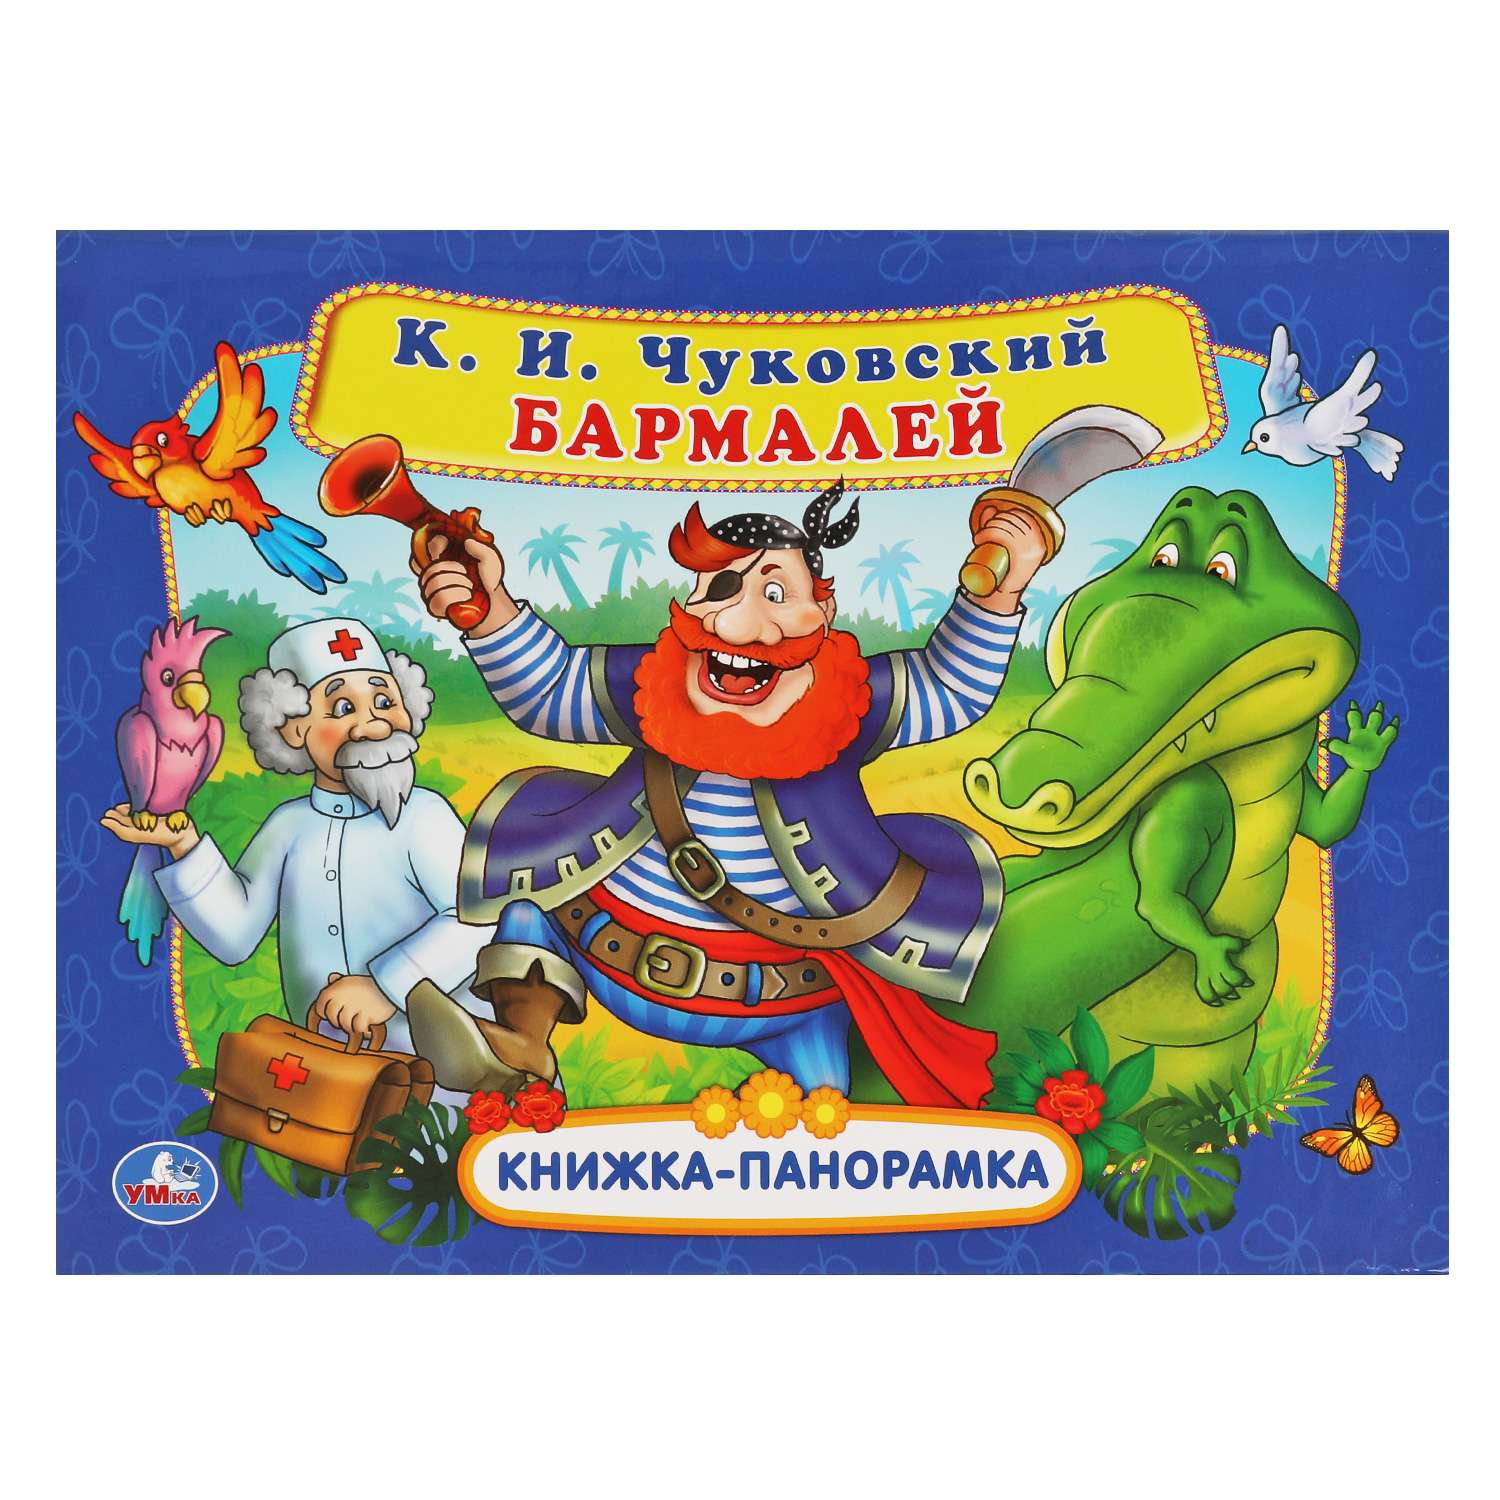 Книга-панорамка УМка Бармалей Чуковский - фото 1